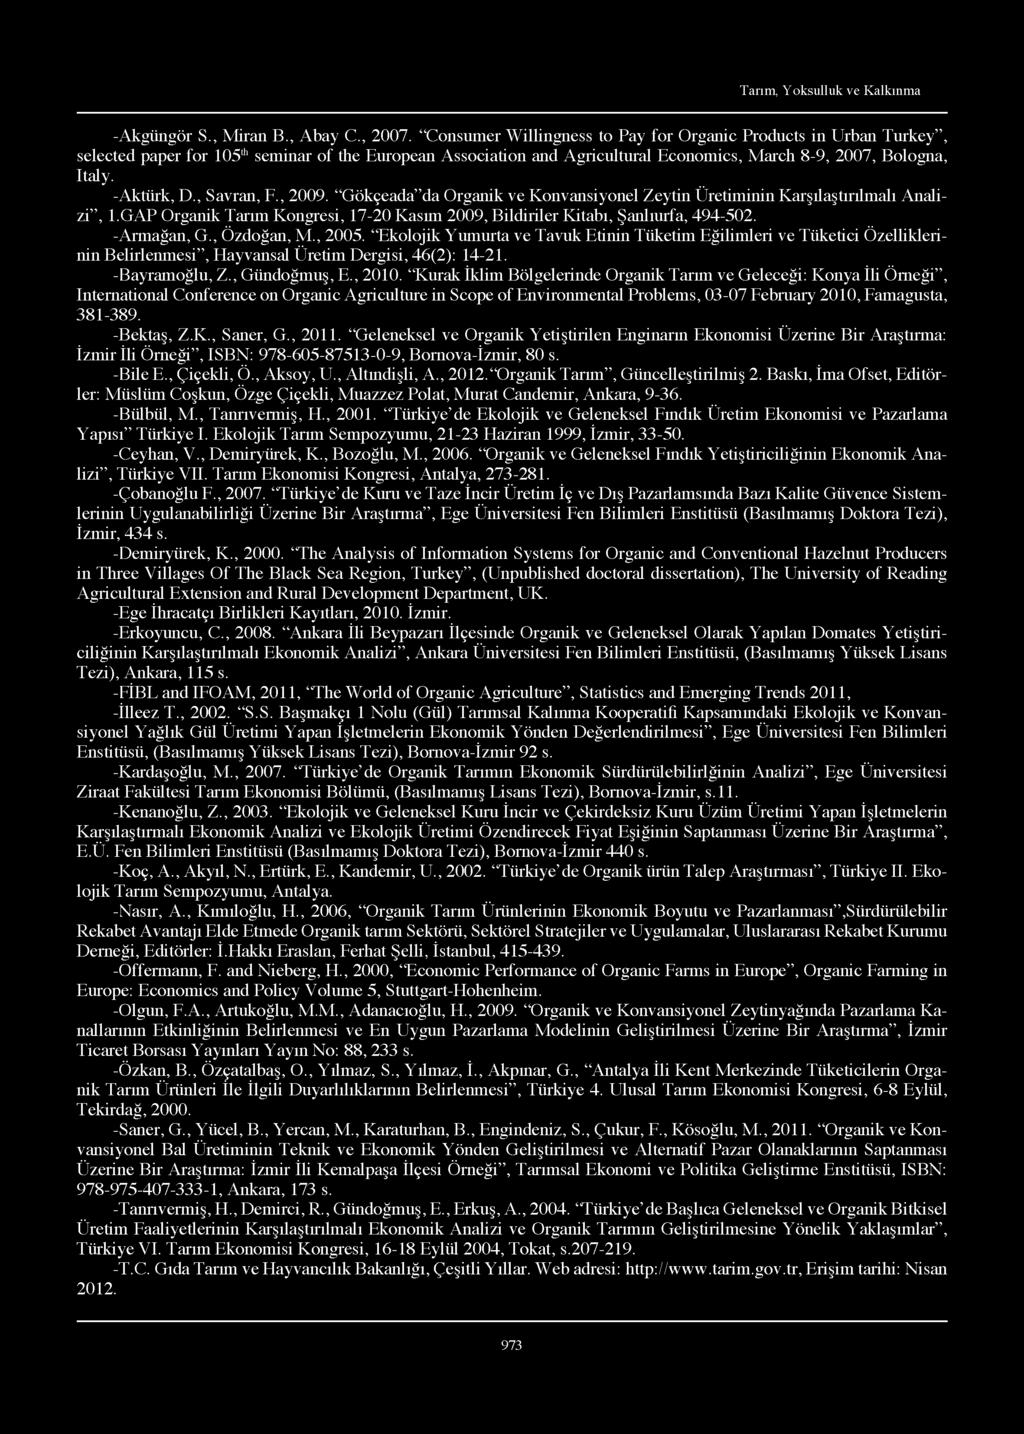 , Savran, F., 2009. Gökçeada da Organik ve Konvansiyonel Zeytin Üretiminin Karşılaştırılmalı Analizi, 1.GAP Organik Tarım Kongresi, 17-20 Kasım 2009, Bildiriler Kitabı, Şanlıurfa, 494-502.